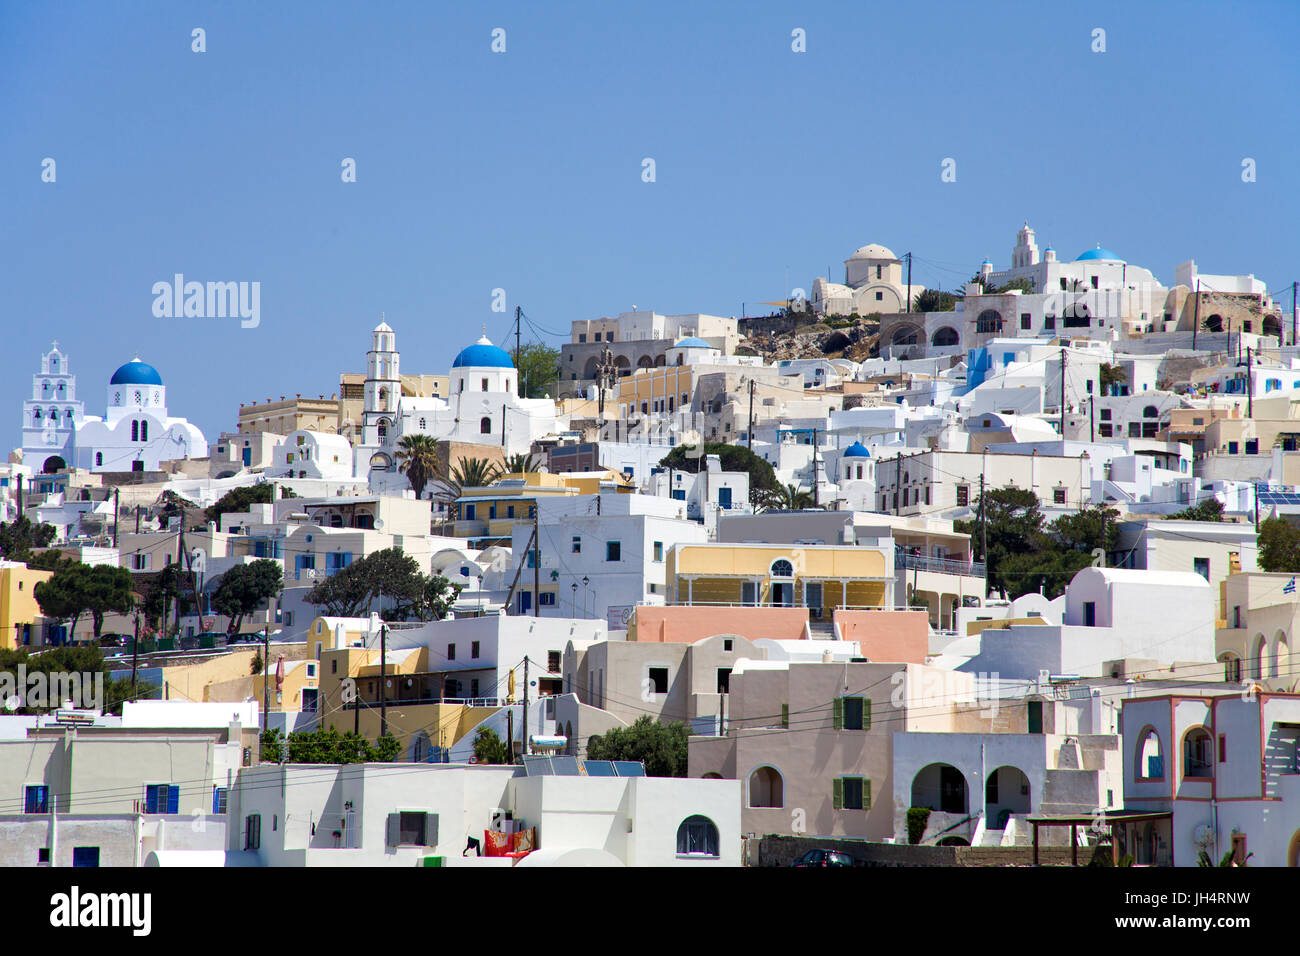 Panorama-Aufnahme vom Dorf Pirgos mit seinen orthodoxen Kirchen im Kasteli Viertel, Santorin, Kykladen, Aegaeis, Griechenland, Mittelmeer, Europa | Th Stock Photo